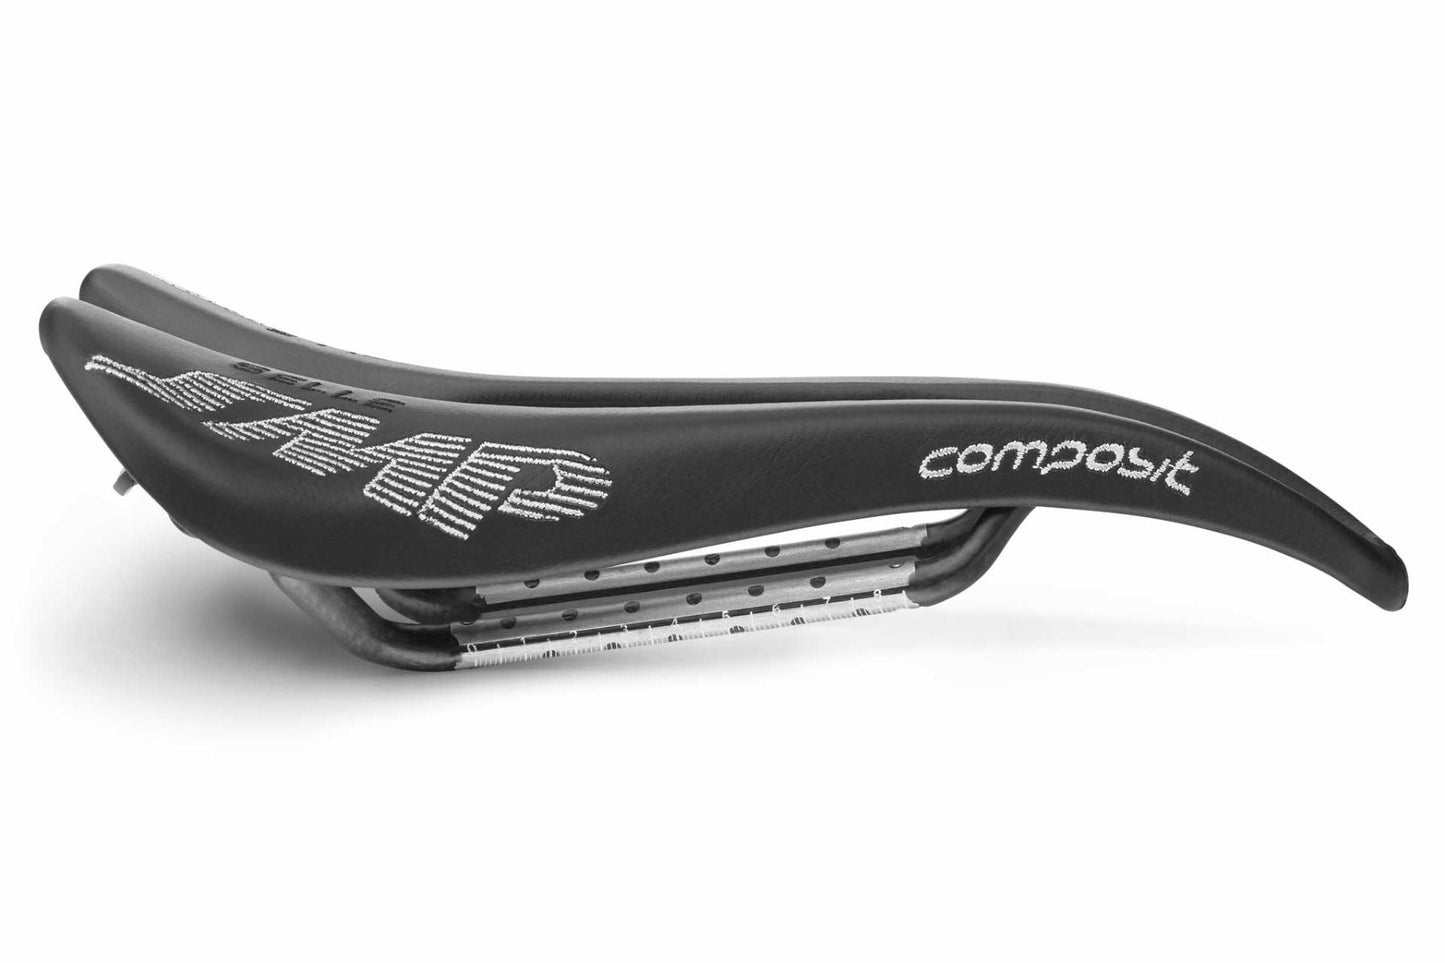 Selle SMP Composit Saddle with Carbon Rails (Black)